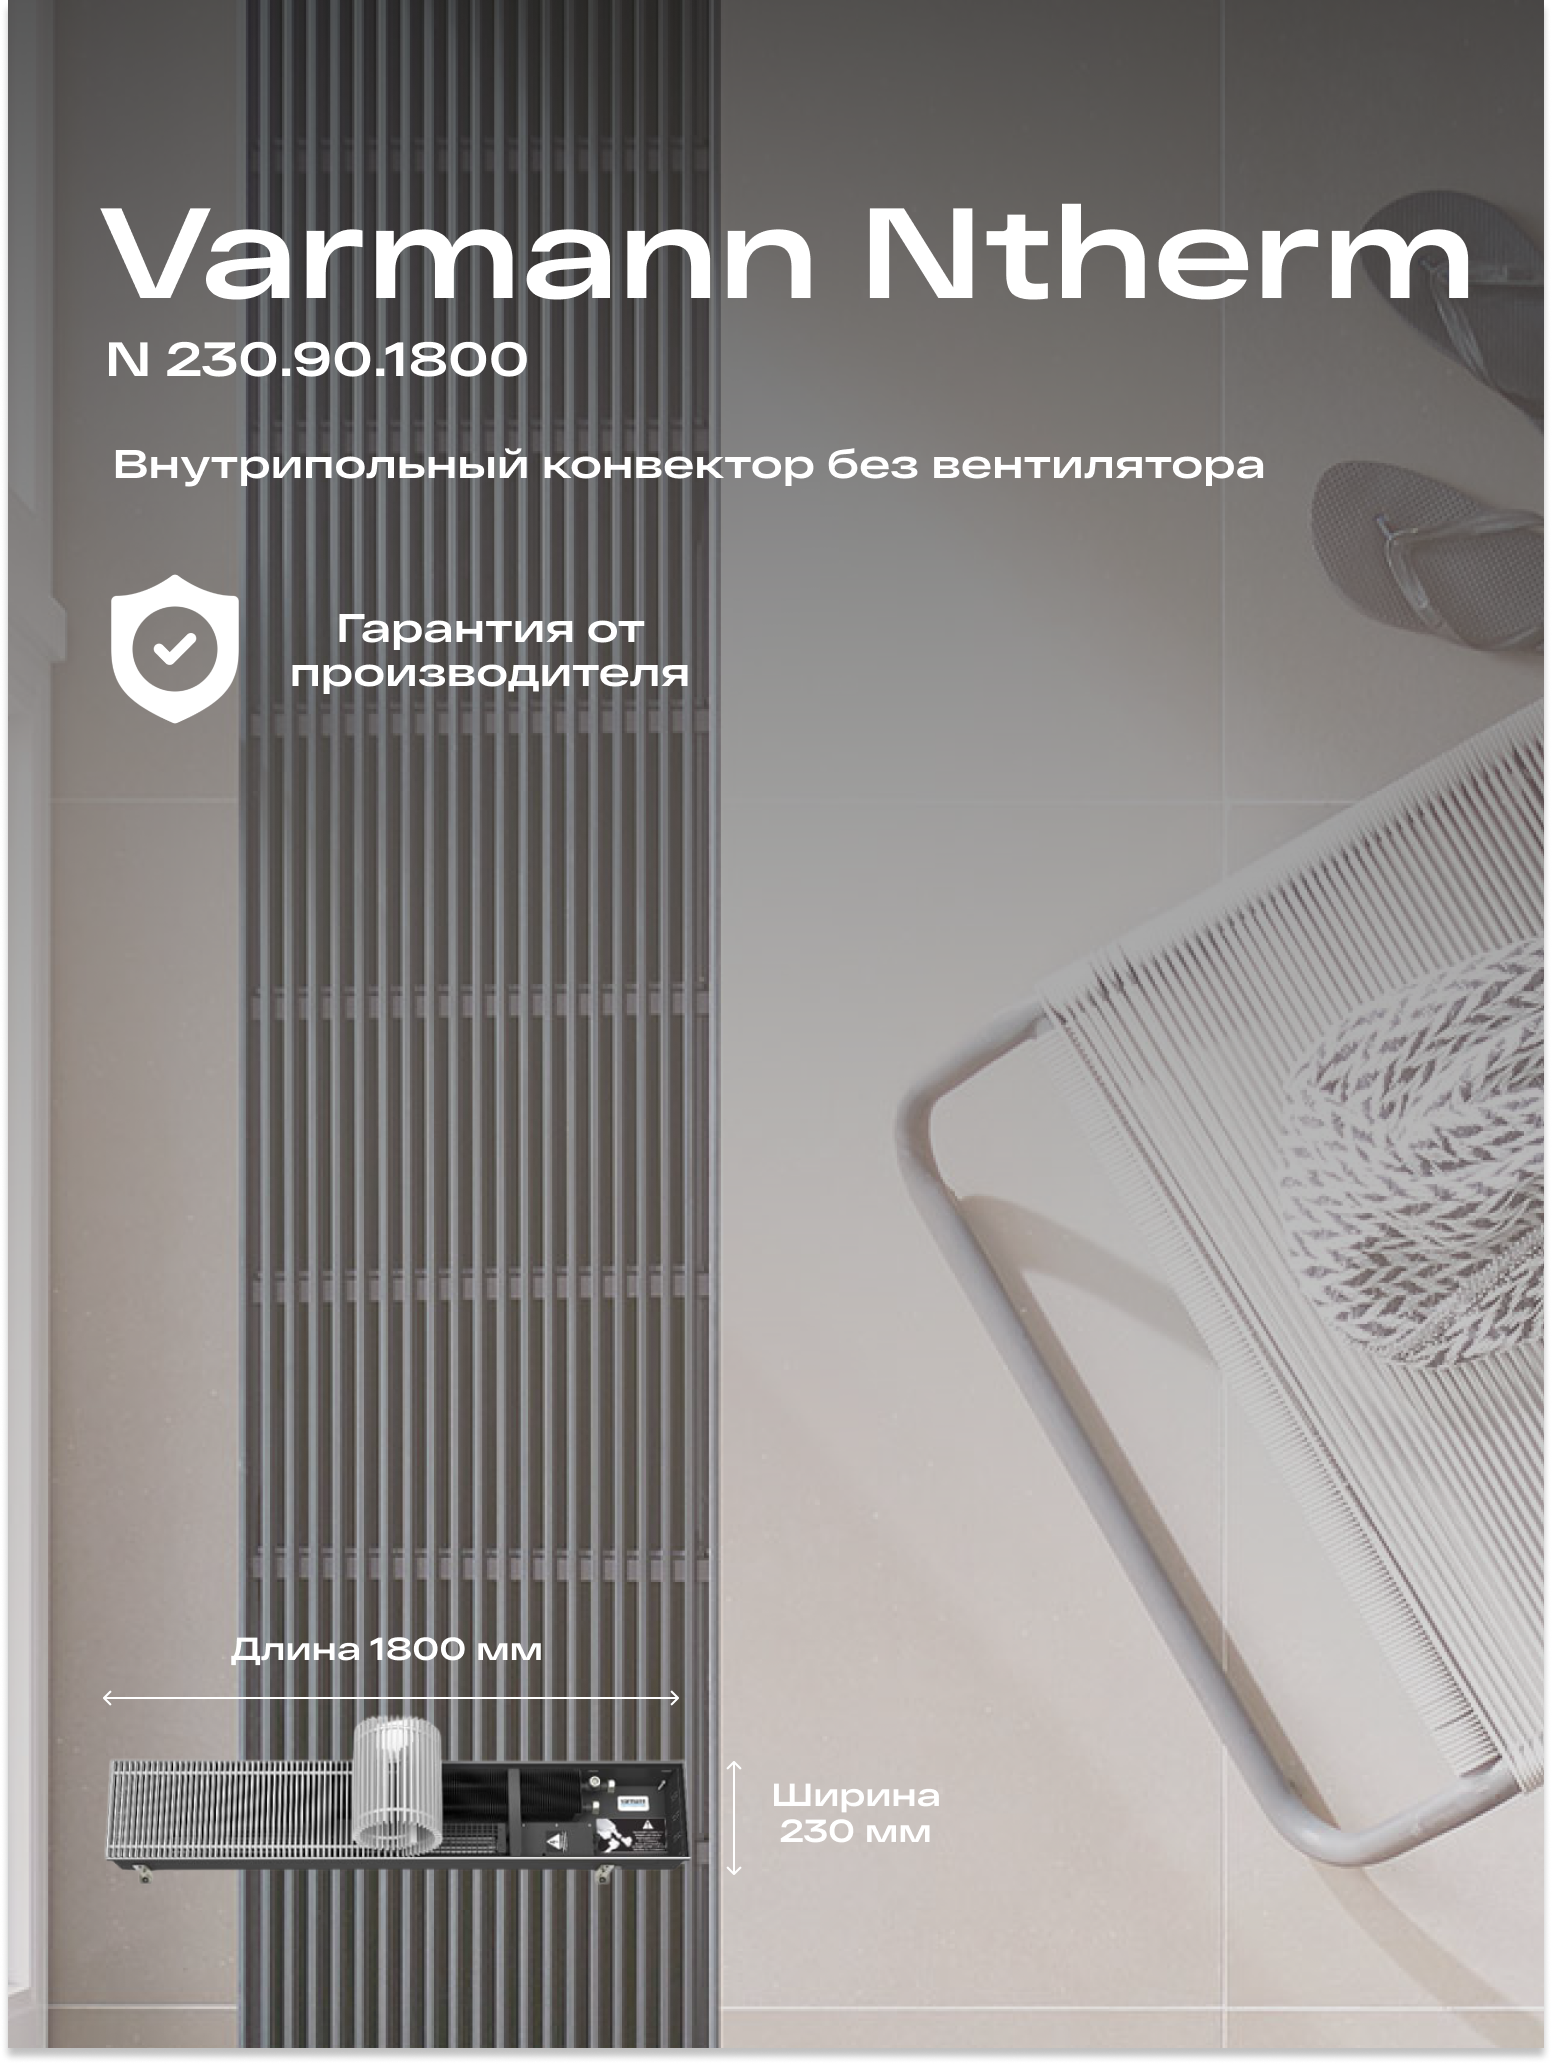 Varmann Встраиваемый конвектор внутрипольный водяной Varmann Ntherm 230.90.1800